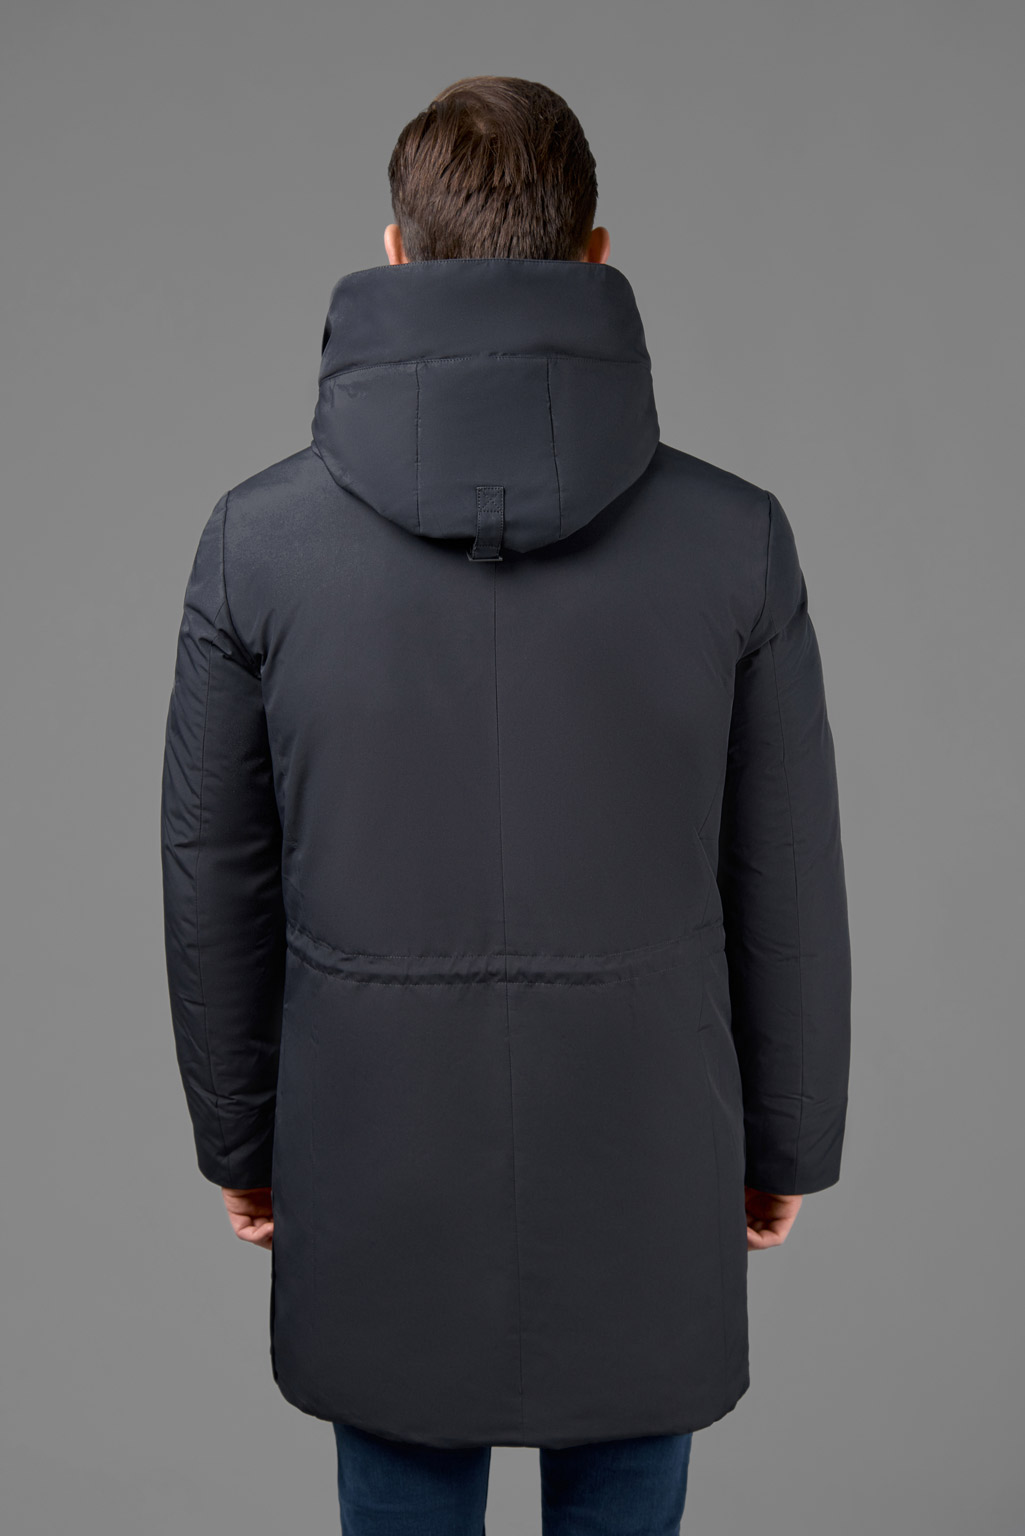 Куртка мужская NW-KM-998